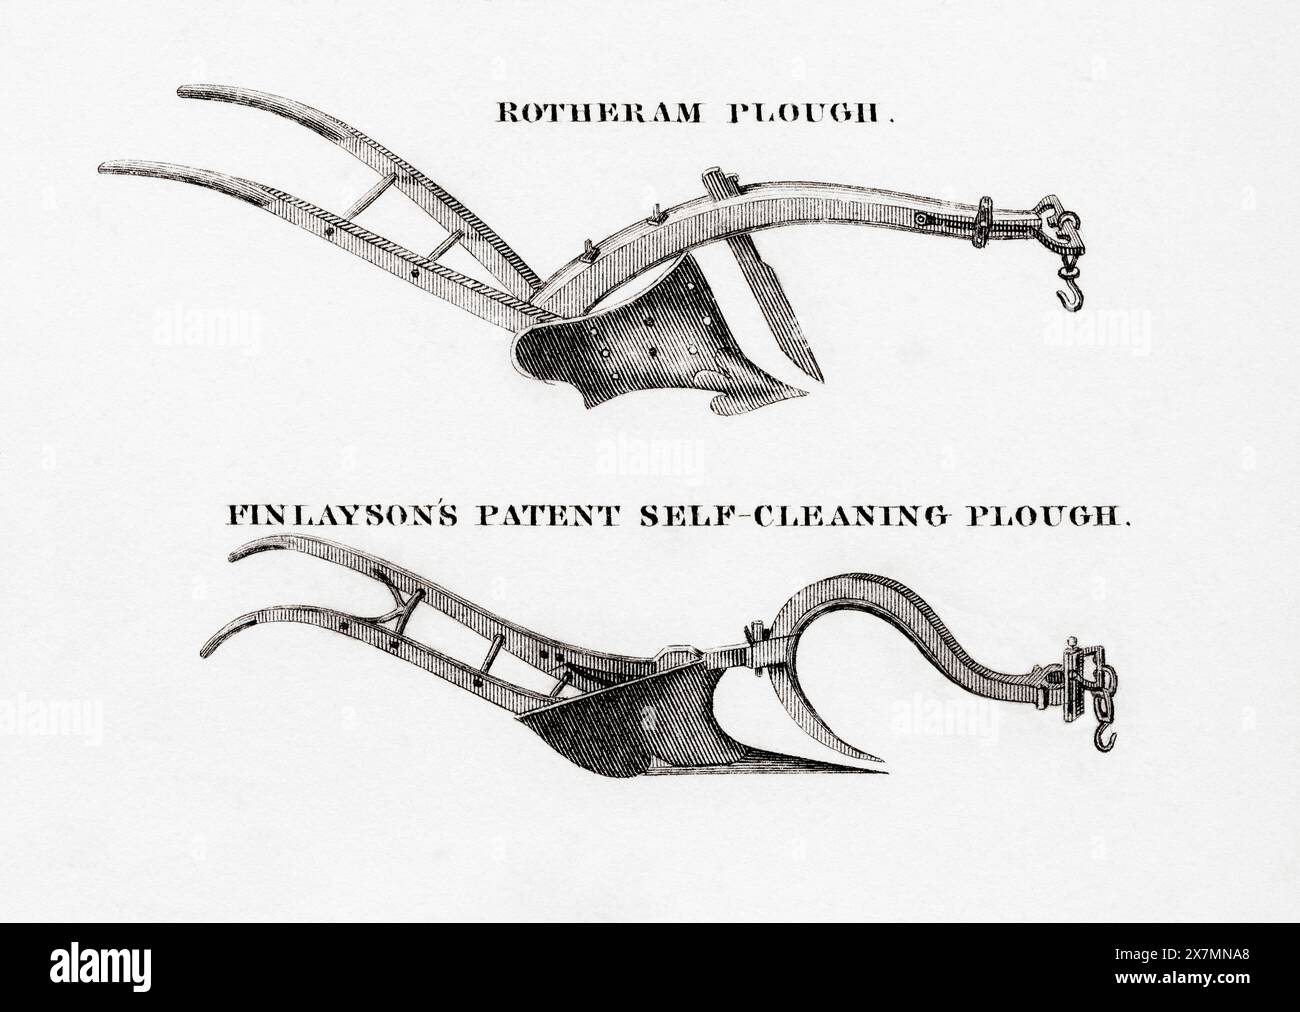 Deux types de charrues. Top, Rotheram Plough. Bas, charrue autonettoyante brevetée Finlayson. Banque D'Images